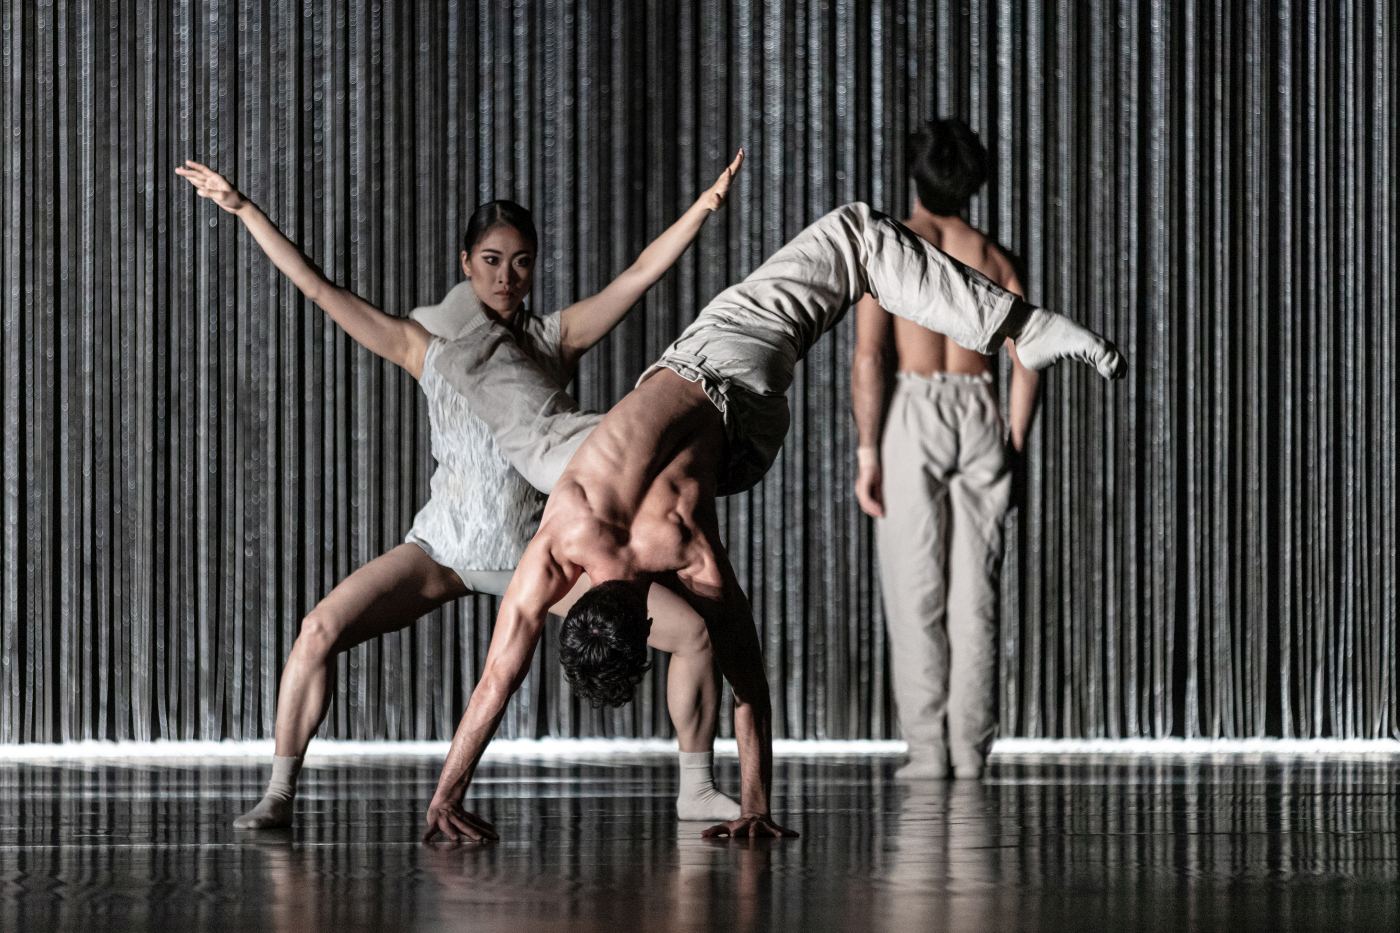 6. A.Fujii, R.Cuadrado, and F.Scarpato, “Gods and Dogs” by J.Kylián, Czech National Ballet 2022 